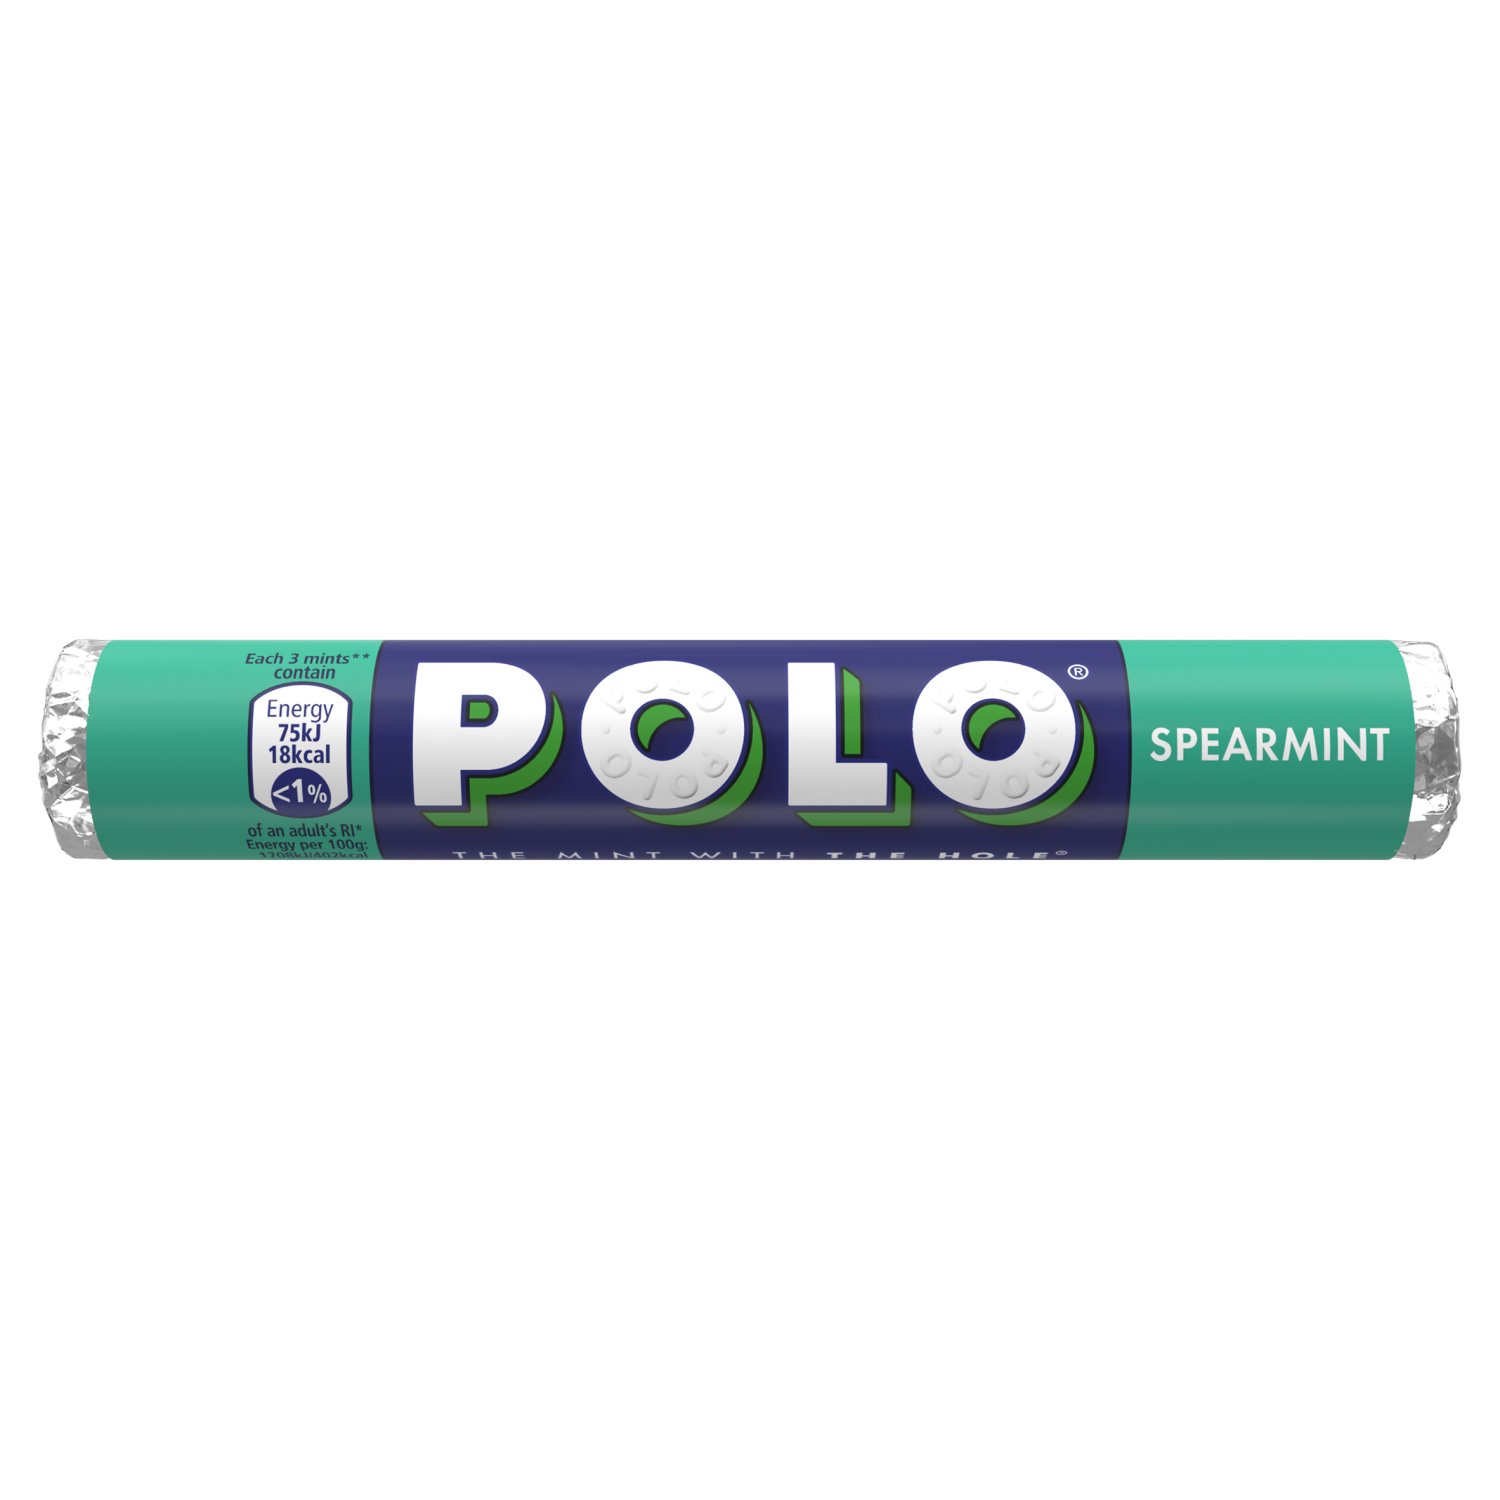 Nestle Polo Spearmint Tube (34 g)